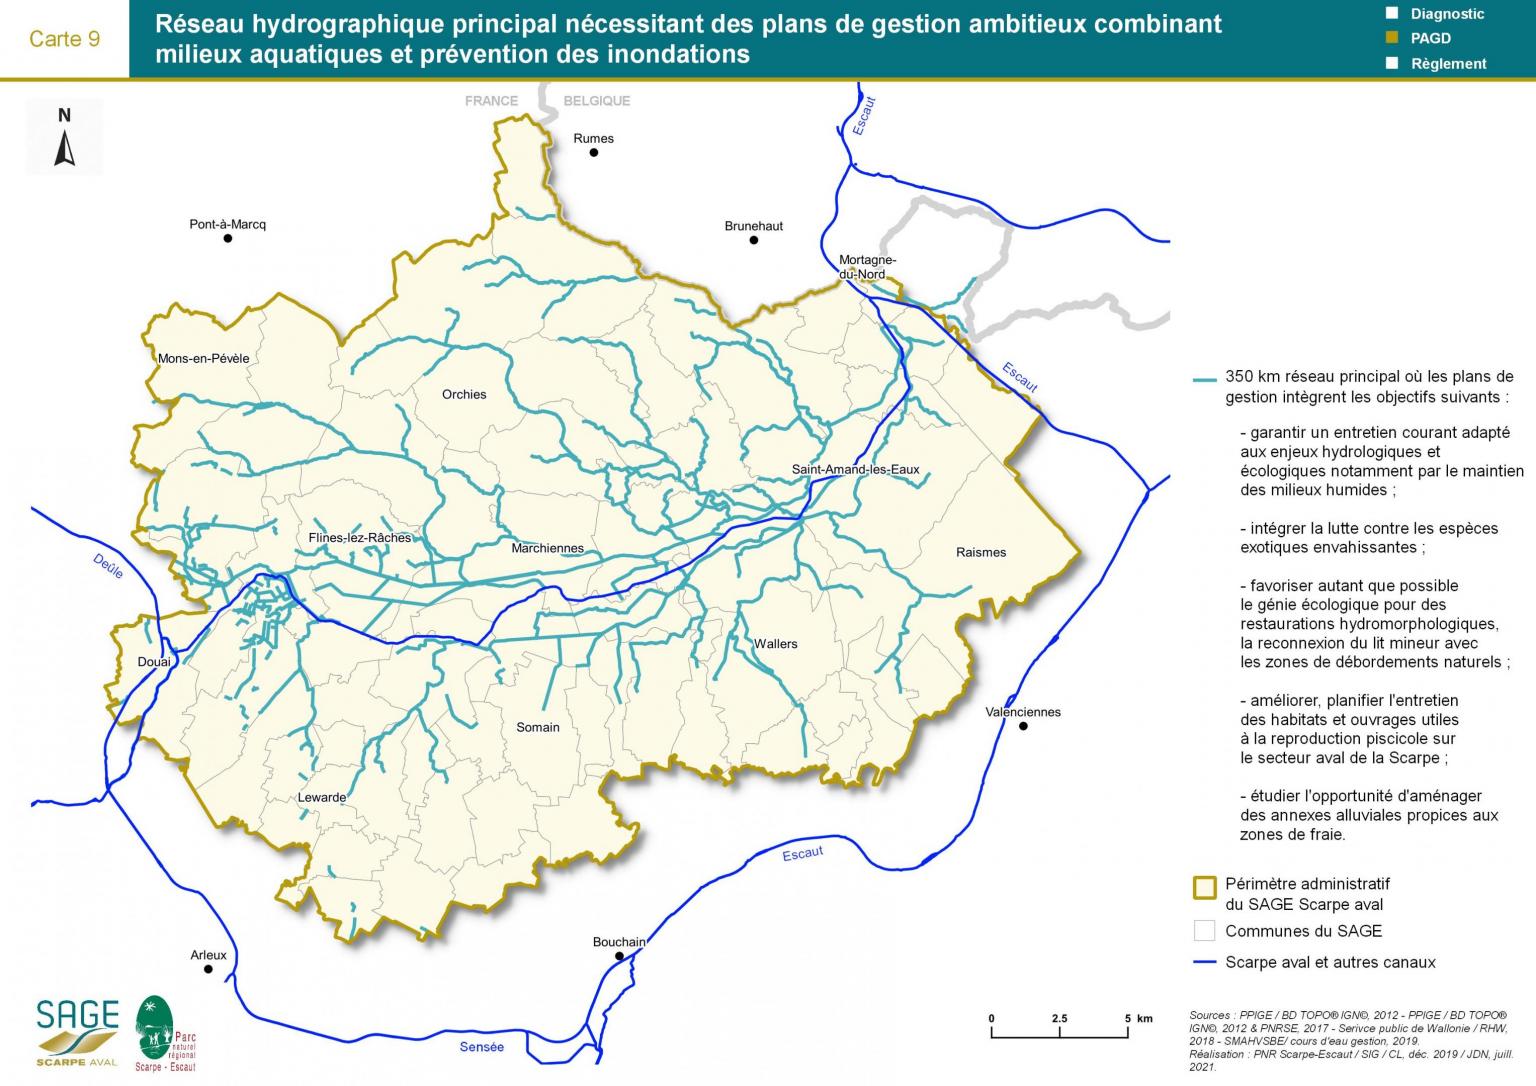 Mesures - Carte 9 : Réseau hydrographique principal nécessitant des plans de gestion ambitieux combinant milieux aquatiques et prévention des inondations